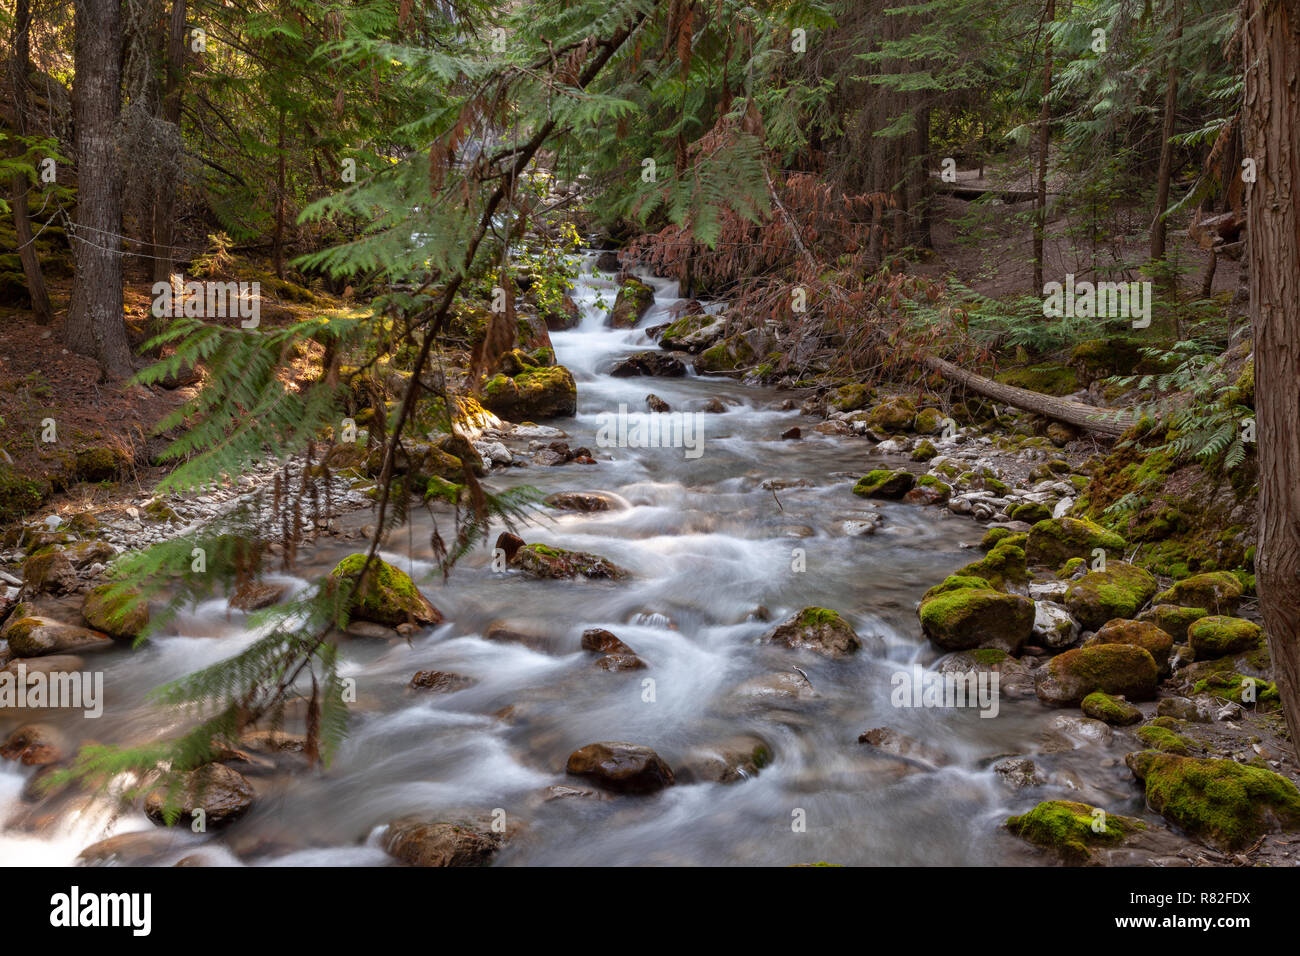 Fluss über ein Fundament, von Pinien und Felsen in den Kanadischen Rocky Mountains Wald gesäumt Hetzen Stockfoto